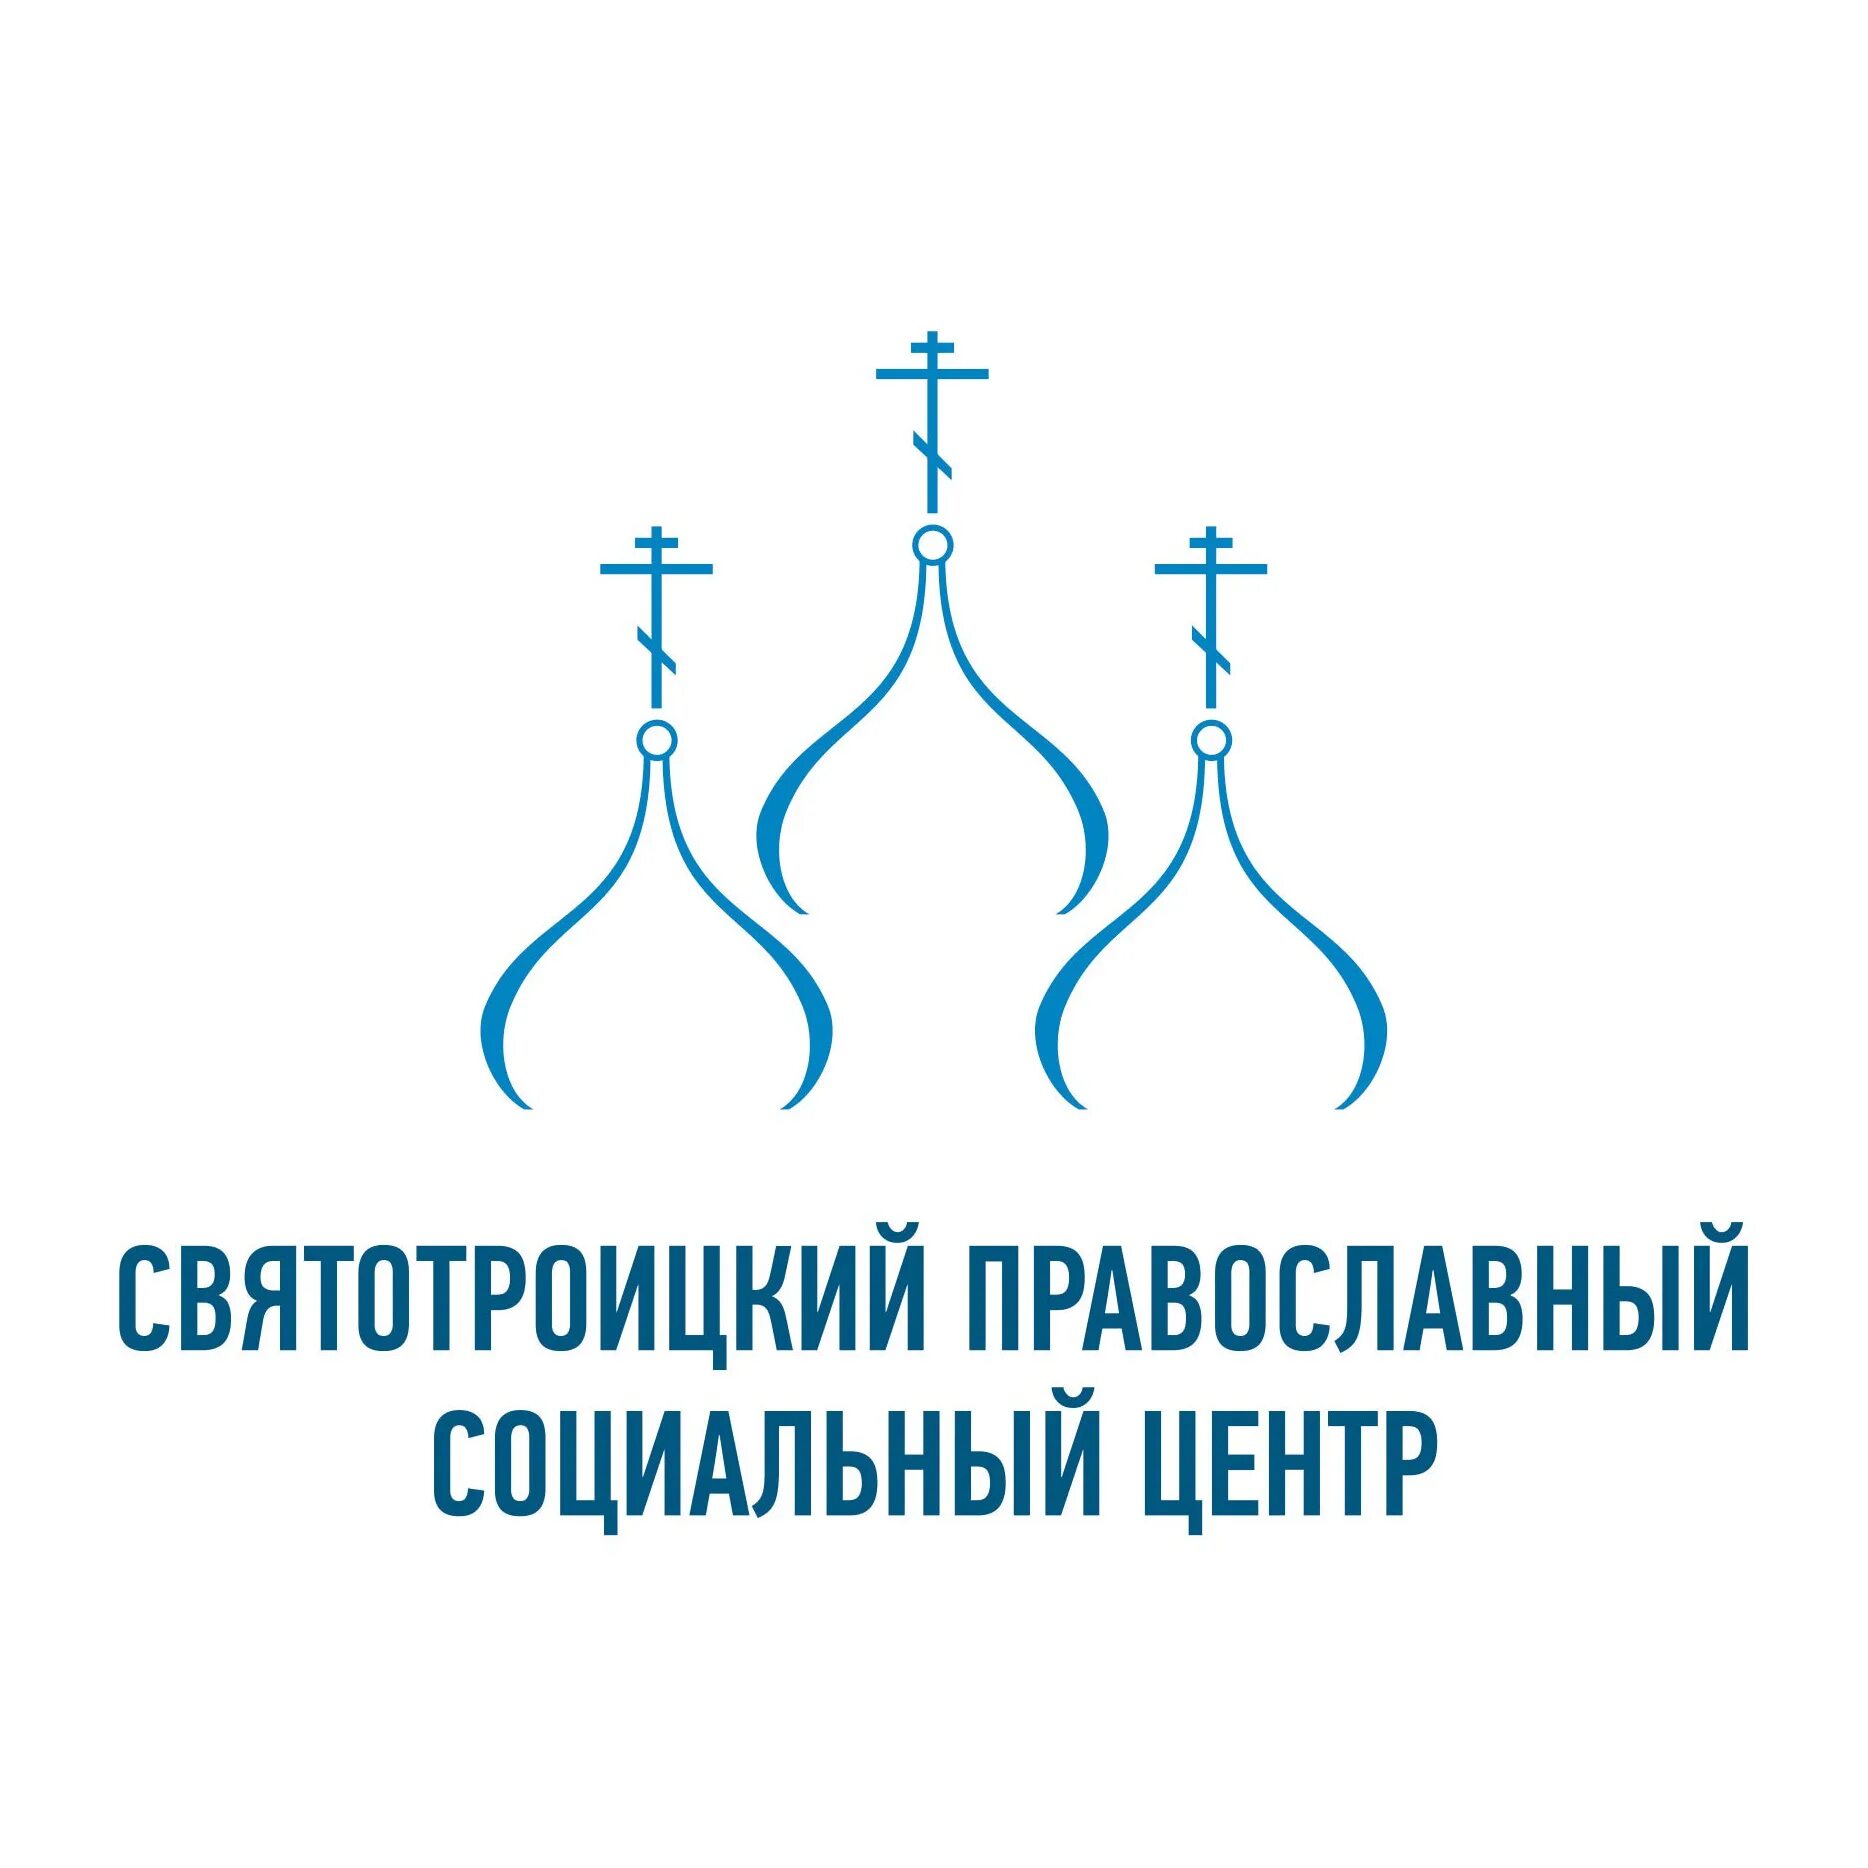 Святотроицкий православный социальный центр. Православие логотип. Эмблема православного храма. Логотип православного центра. Православные социальные группы